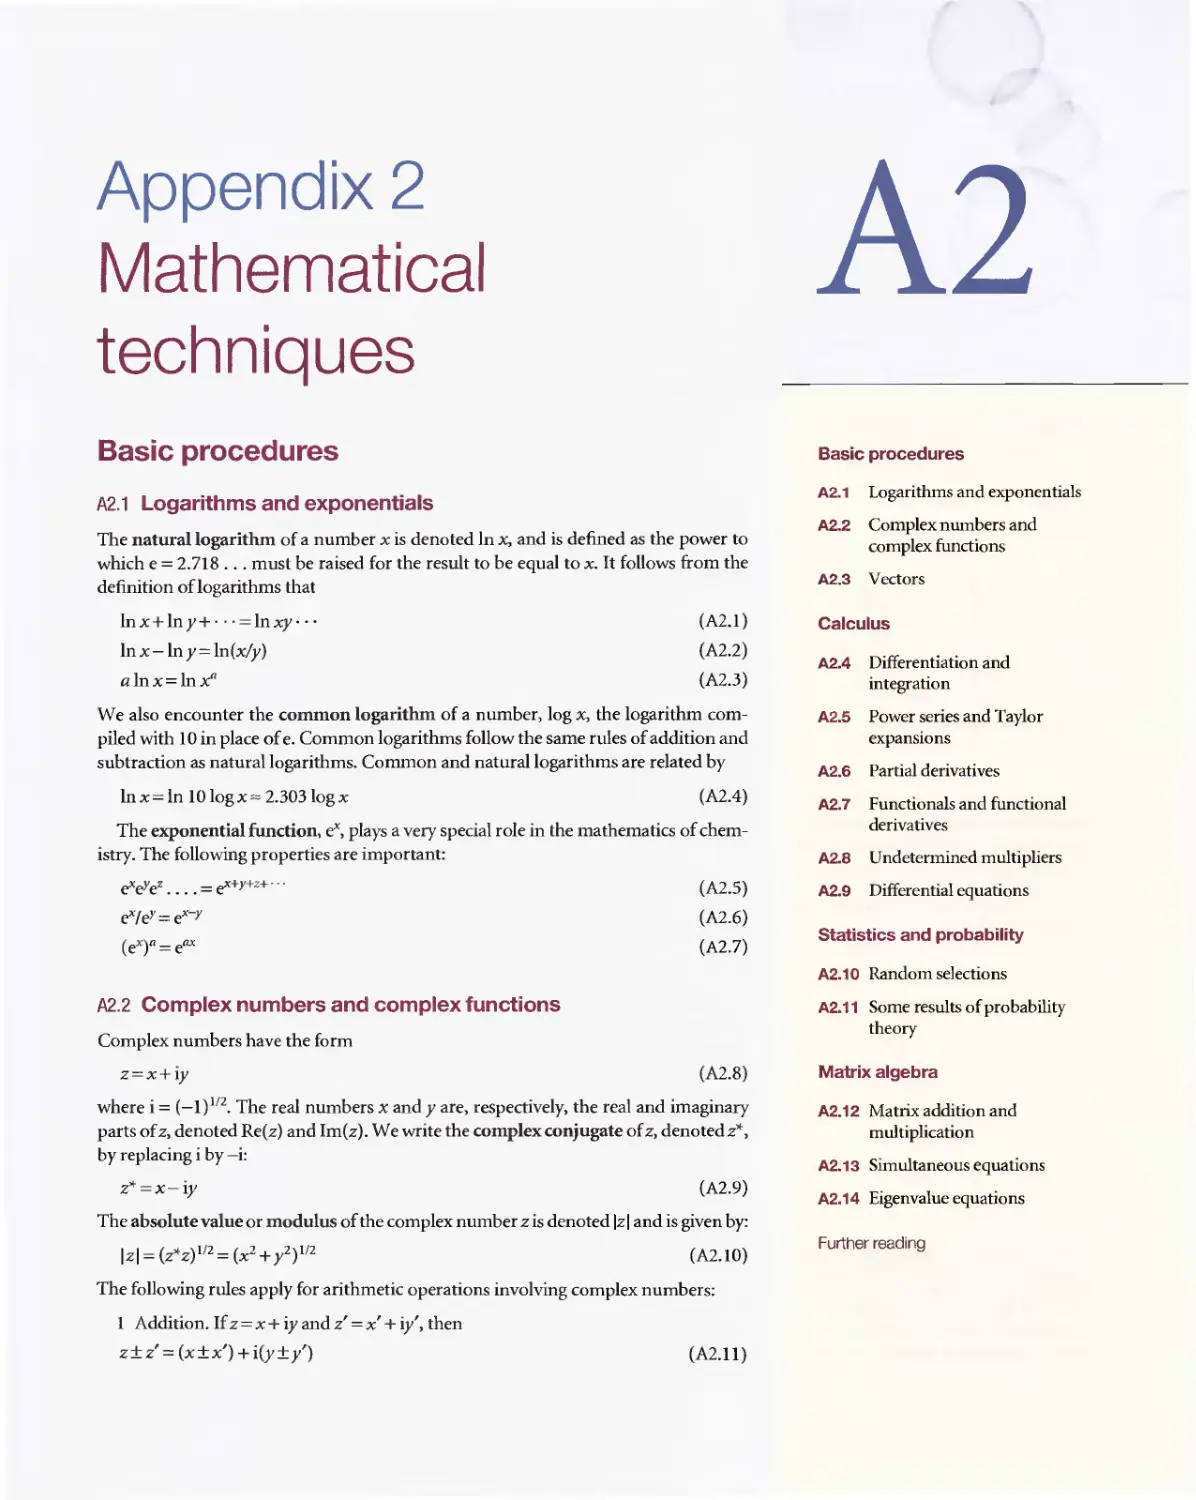 Appendix 2 - Mathematical techniques